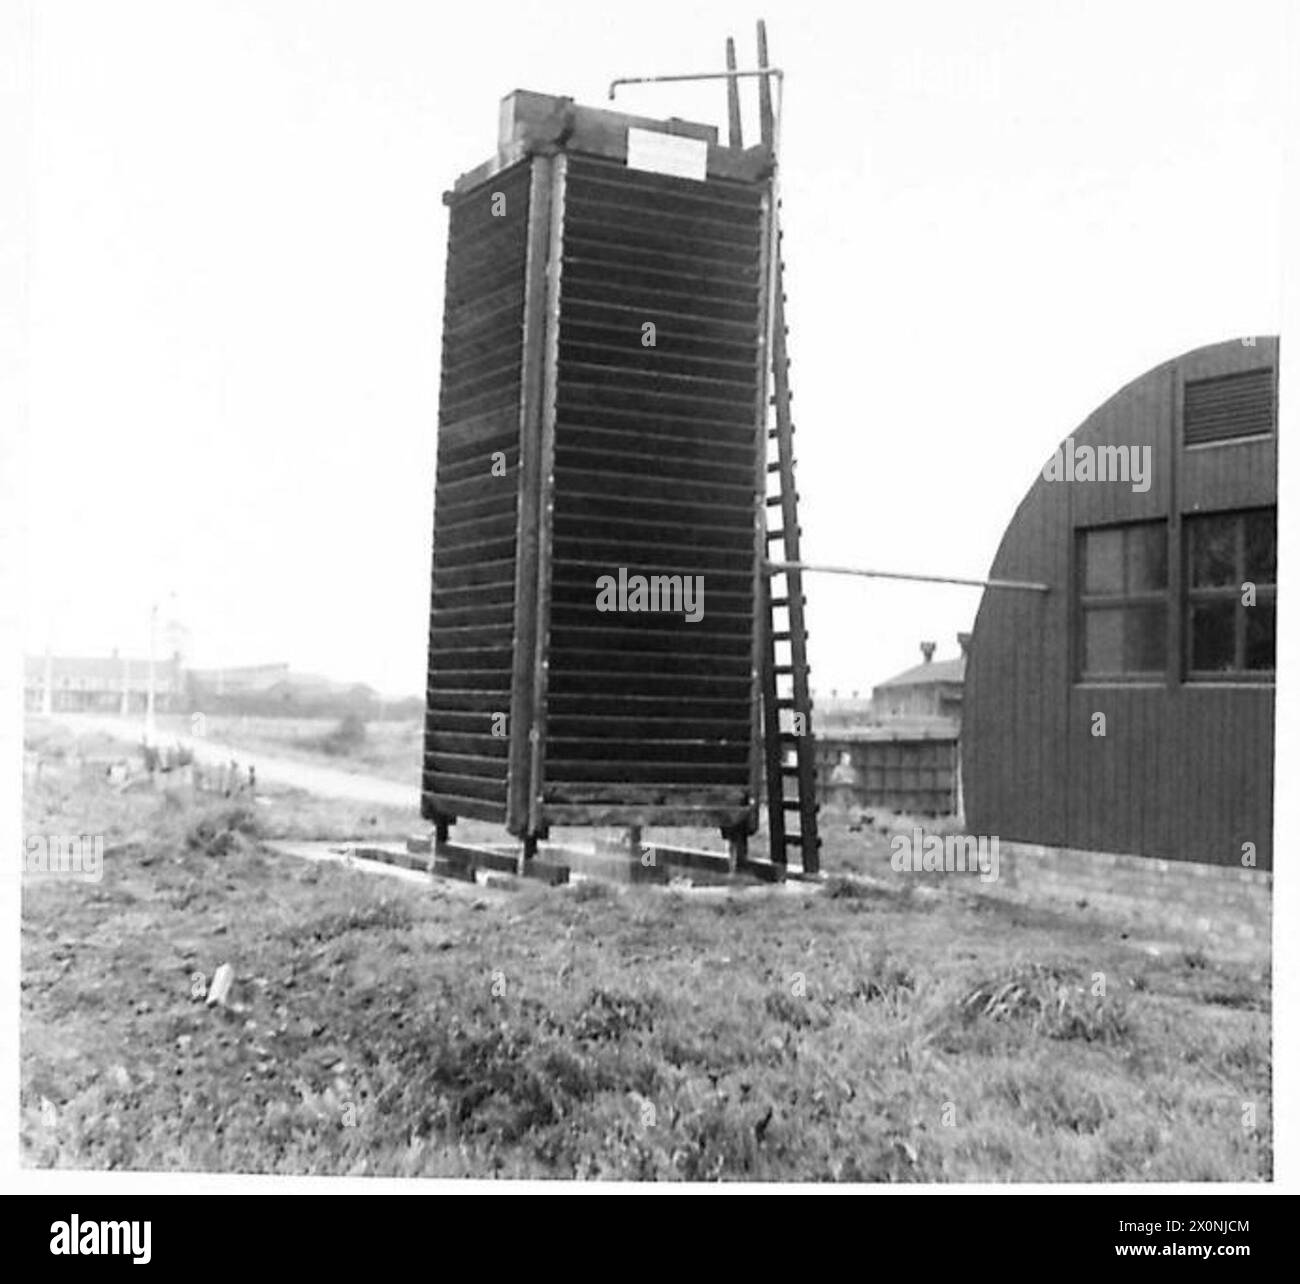 VERSORGUNGSRESERVE-DEPOT - Wasserkühlturm und Kompressorhaus, fotografisches negativ, British Army Stockfoto